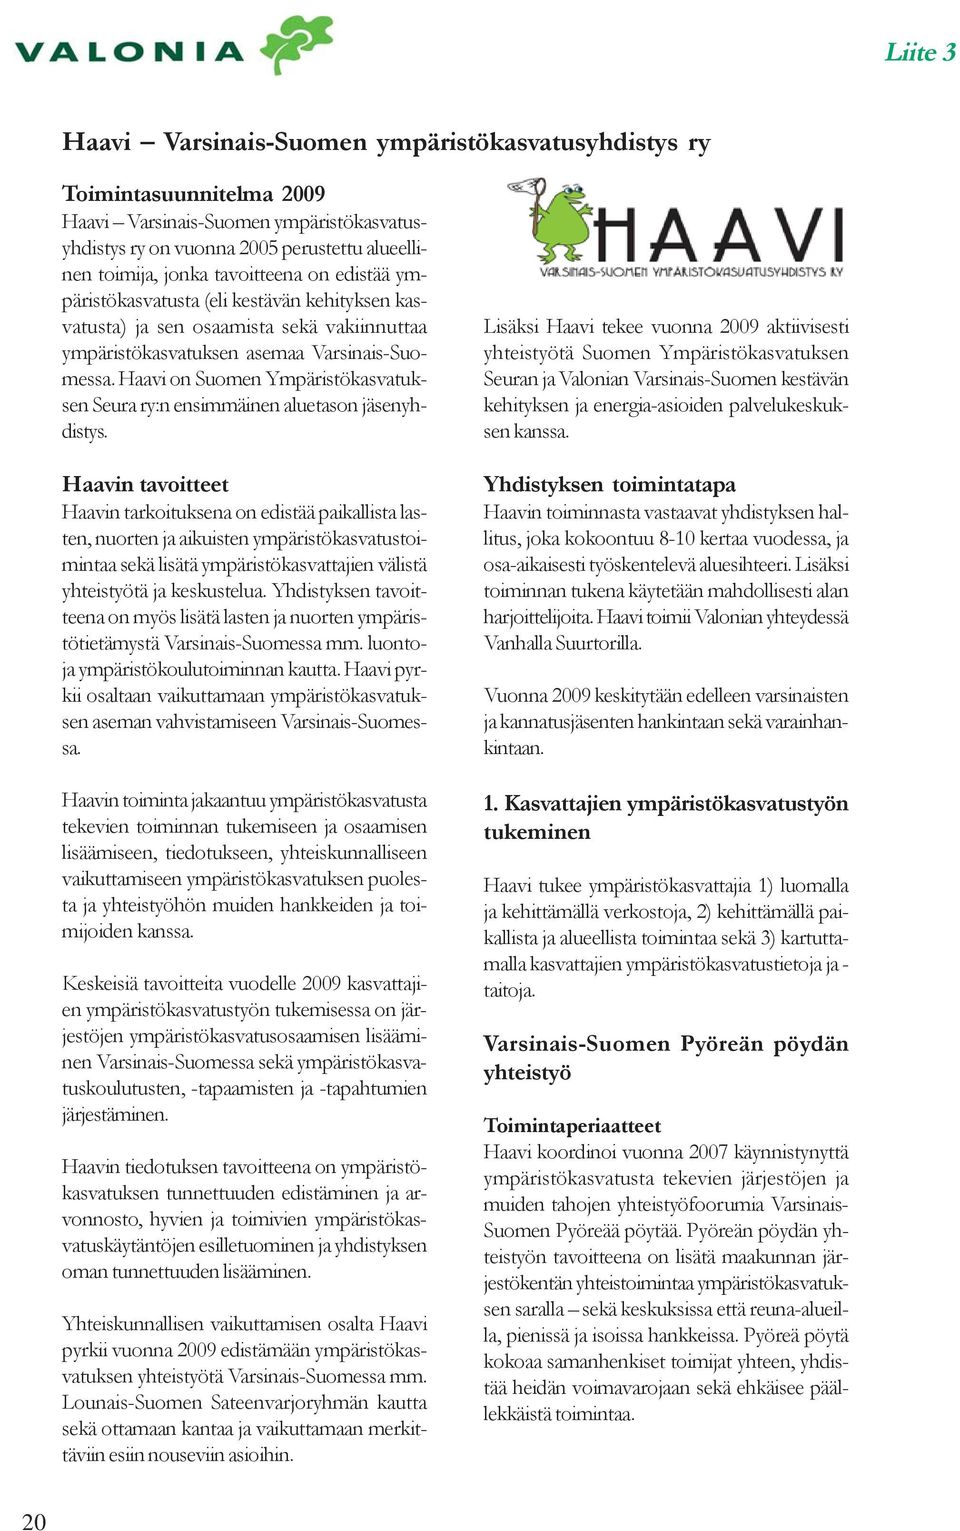 Haavi on Suomen Ympäristökasvatuksen Seura ry:n ensimmäinen aluetason jäsenyhdistys.